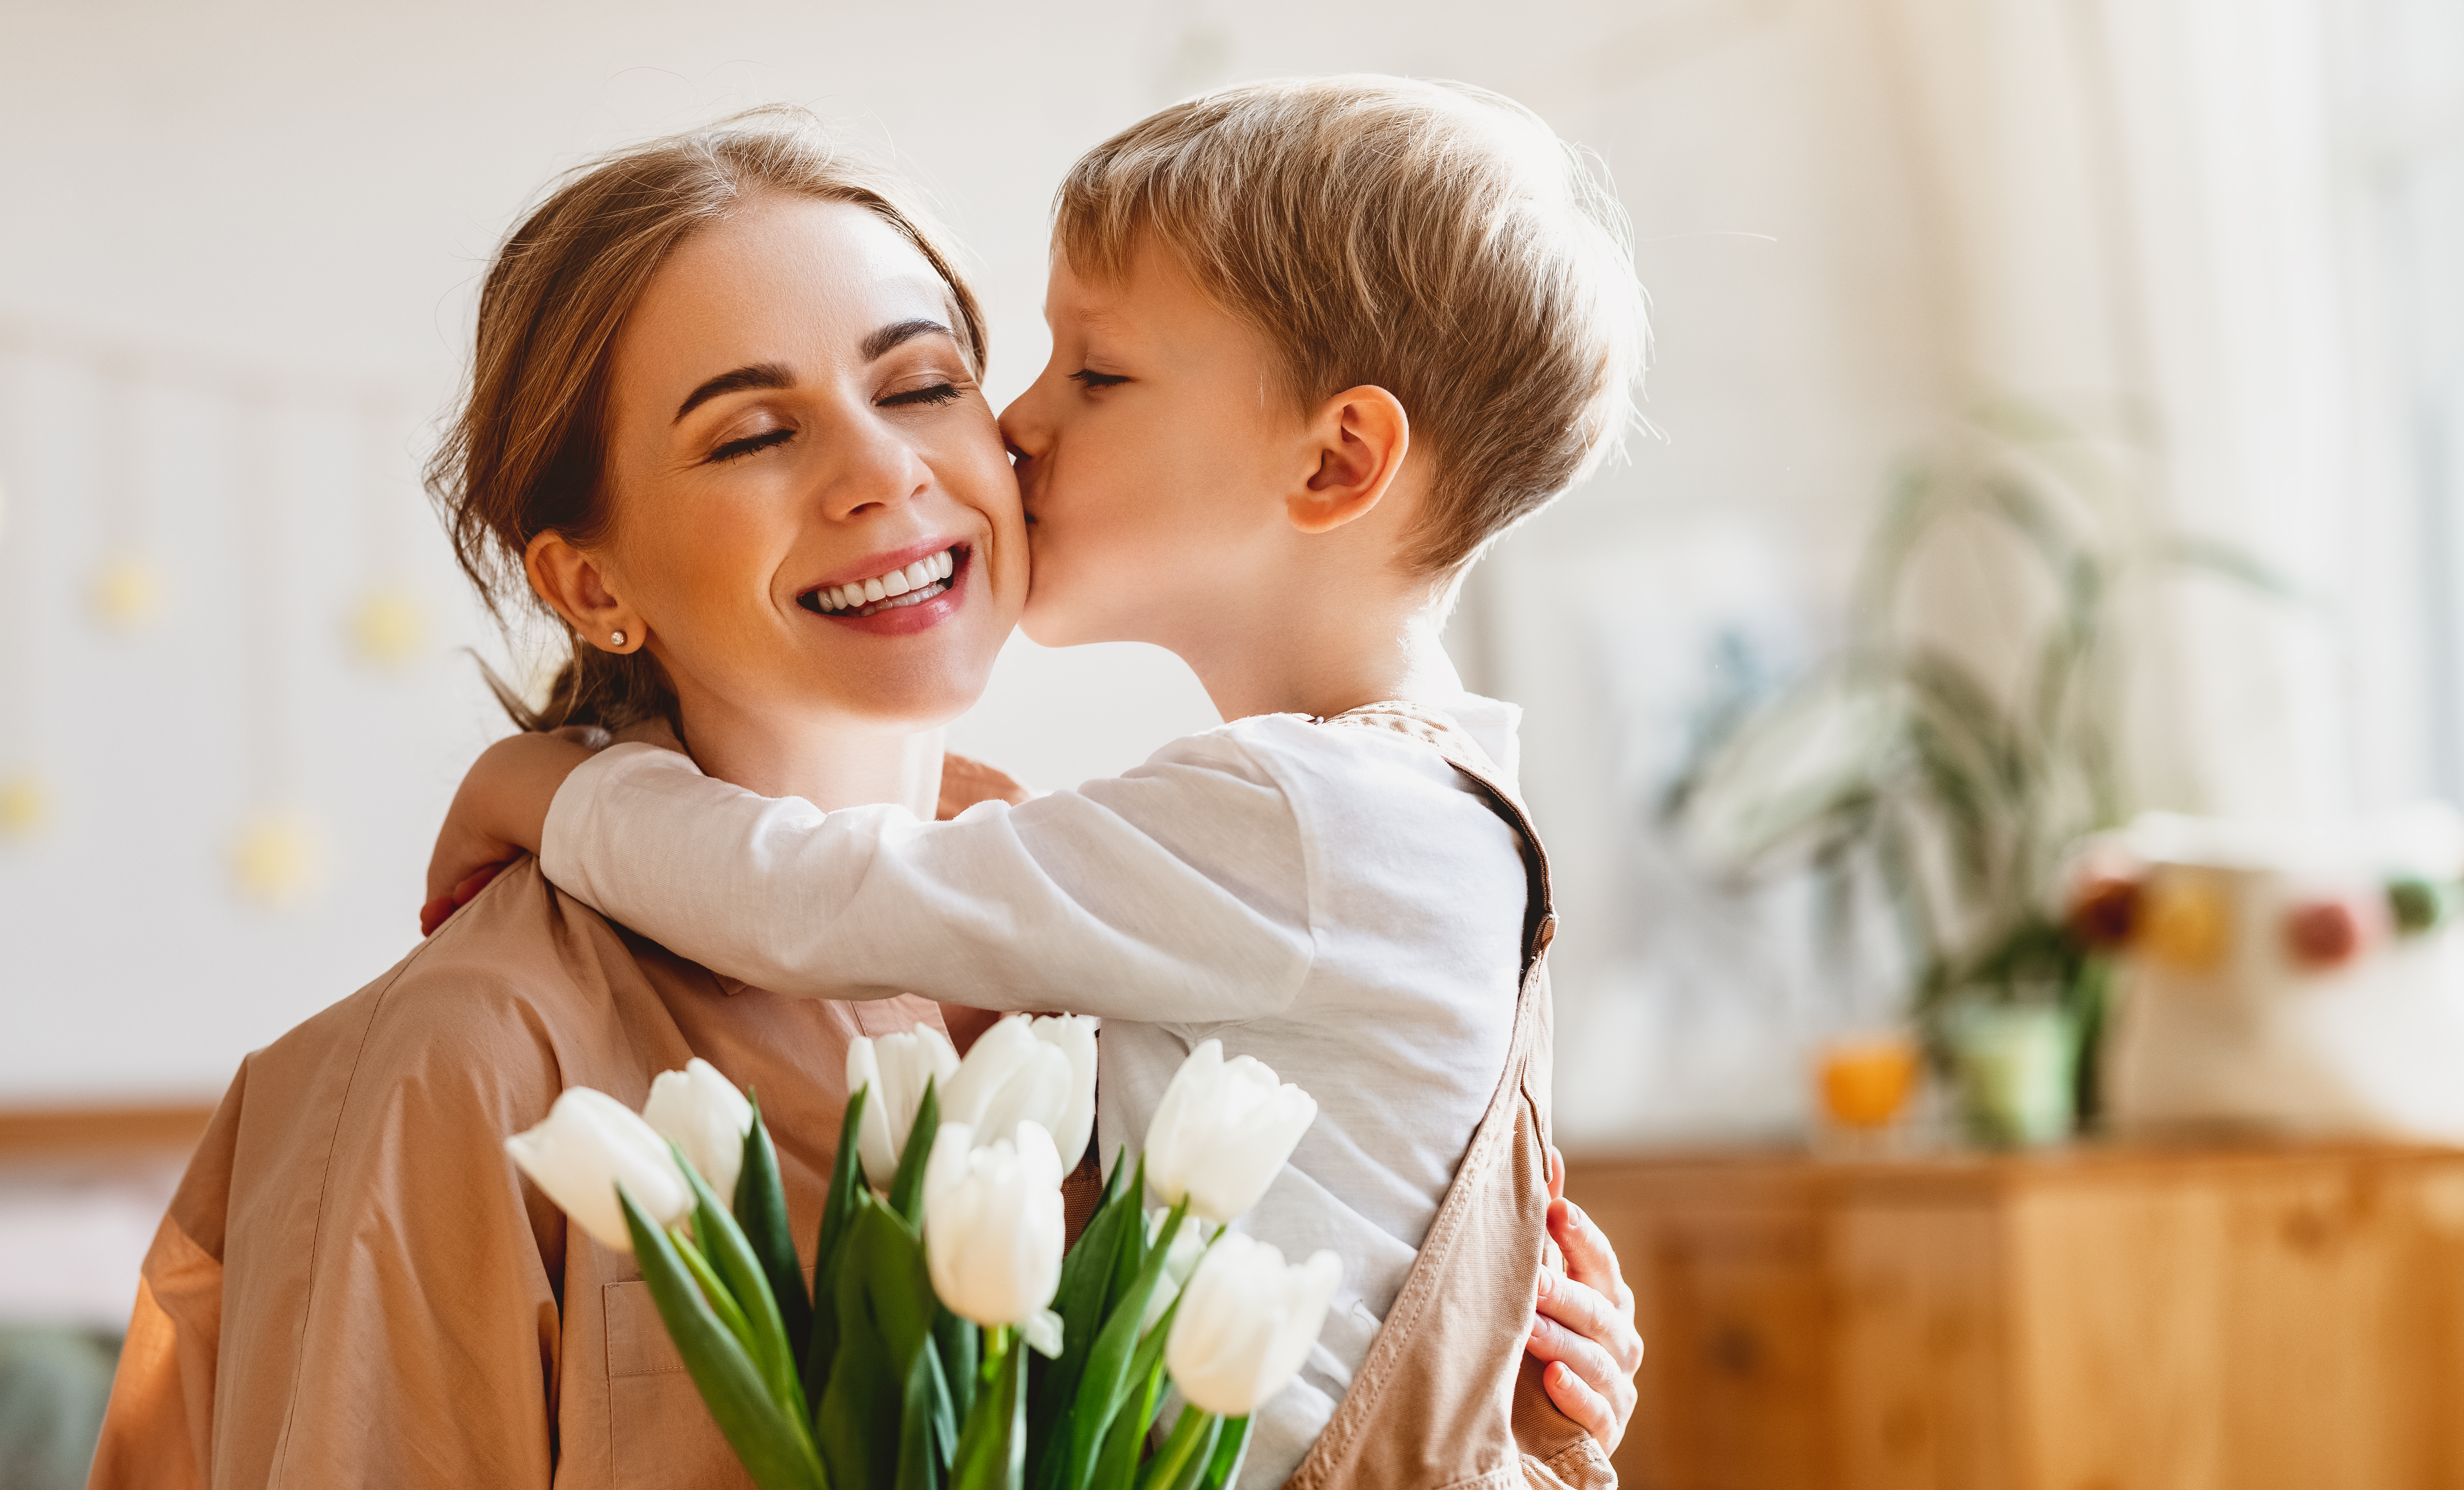 Petit garçon embrassant sa maman et lui offrant des fleurs | Source : Shutterstock